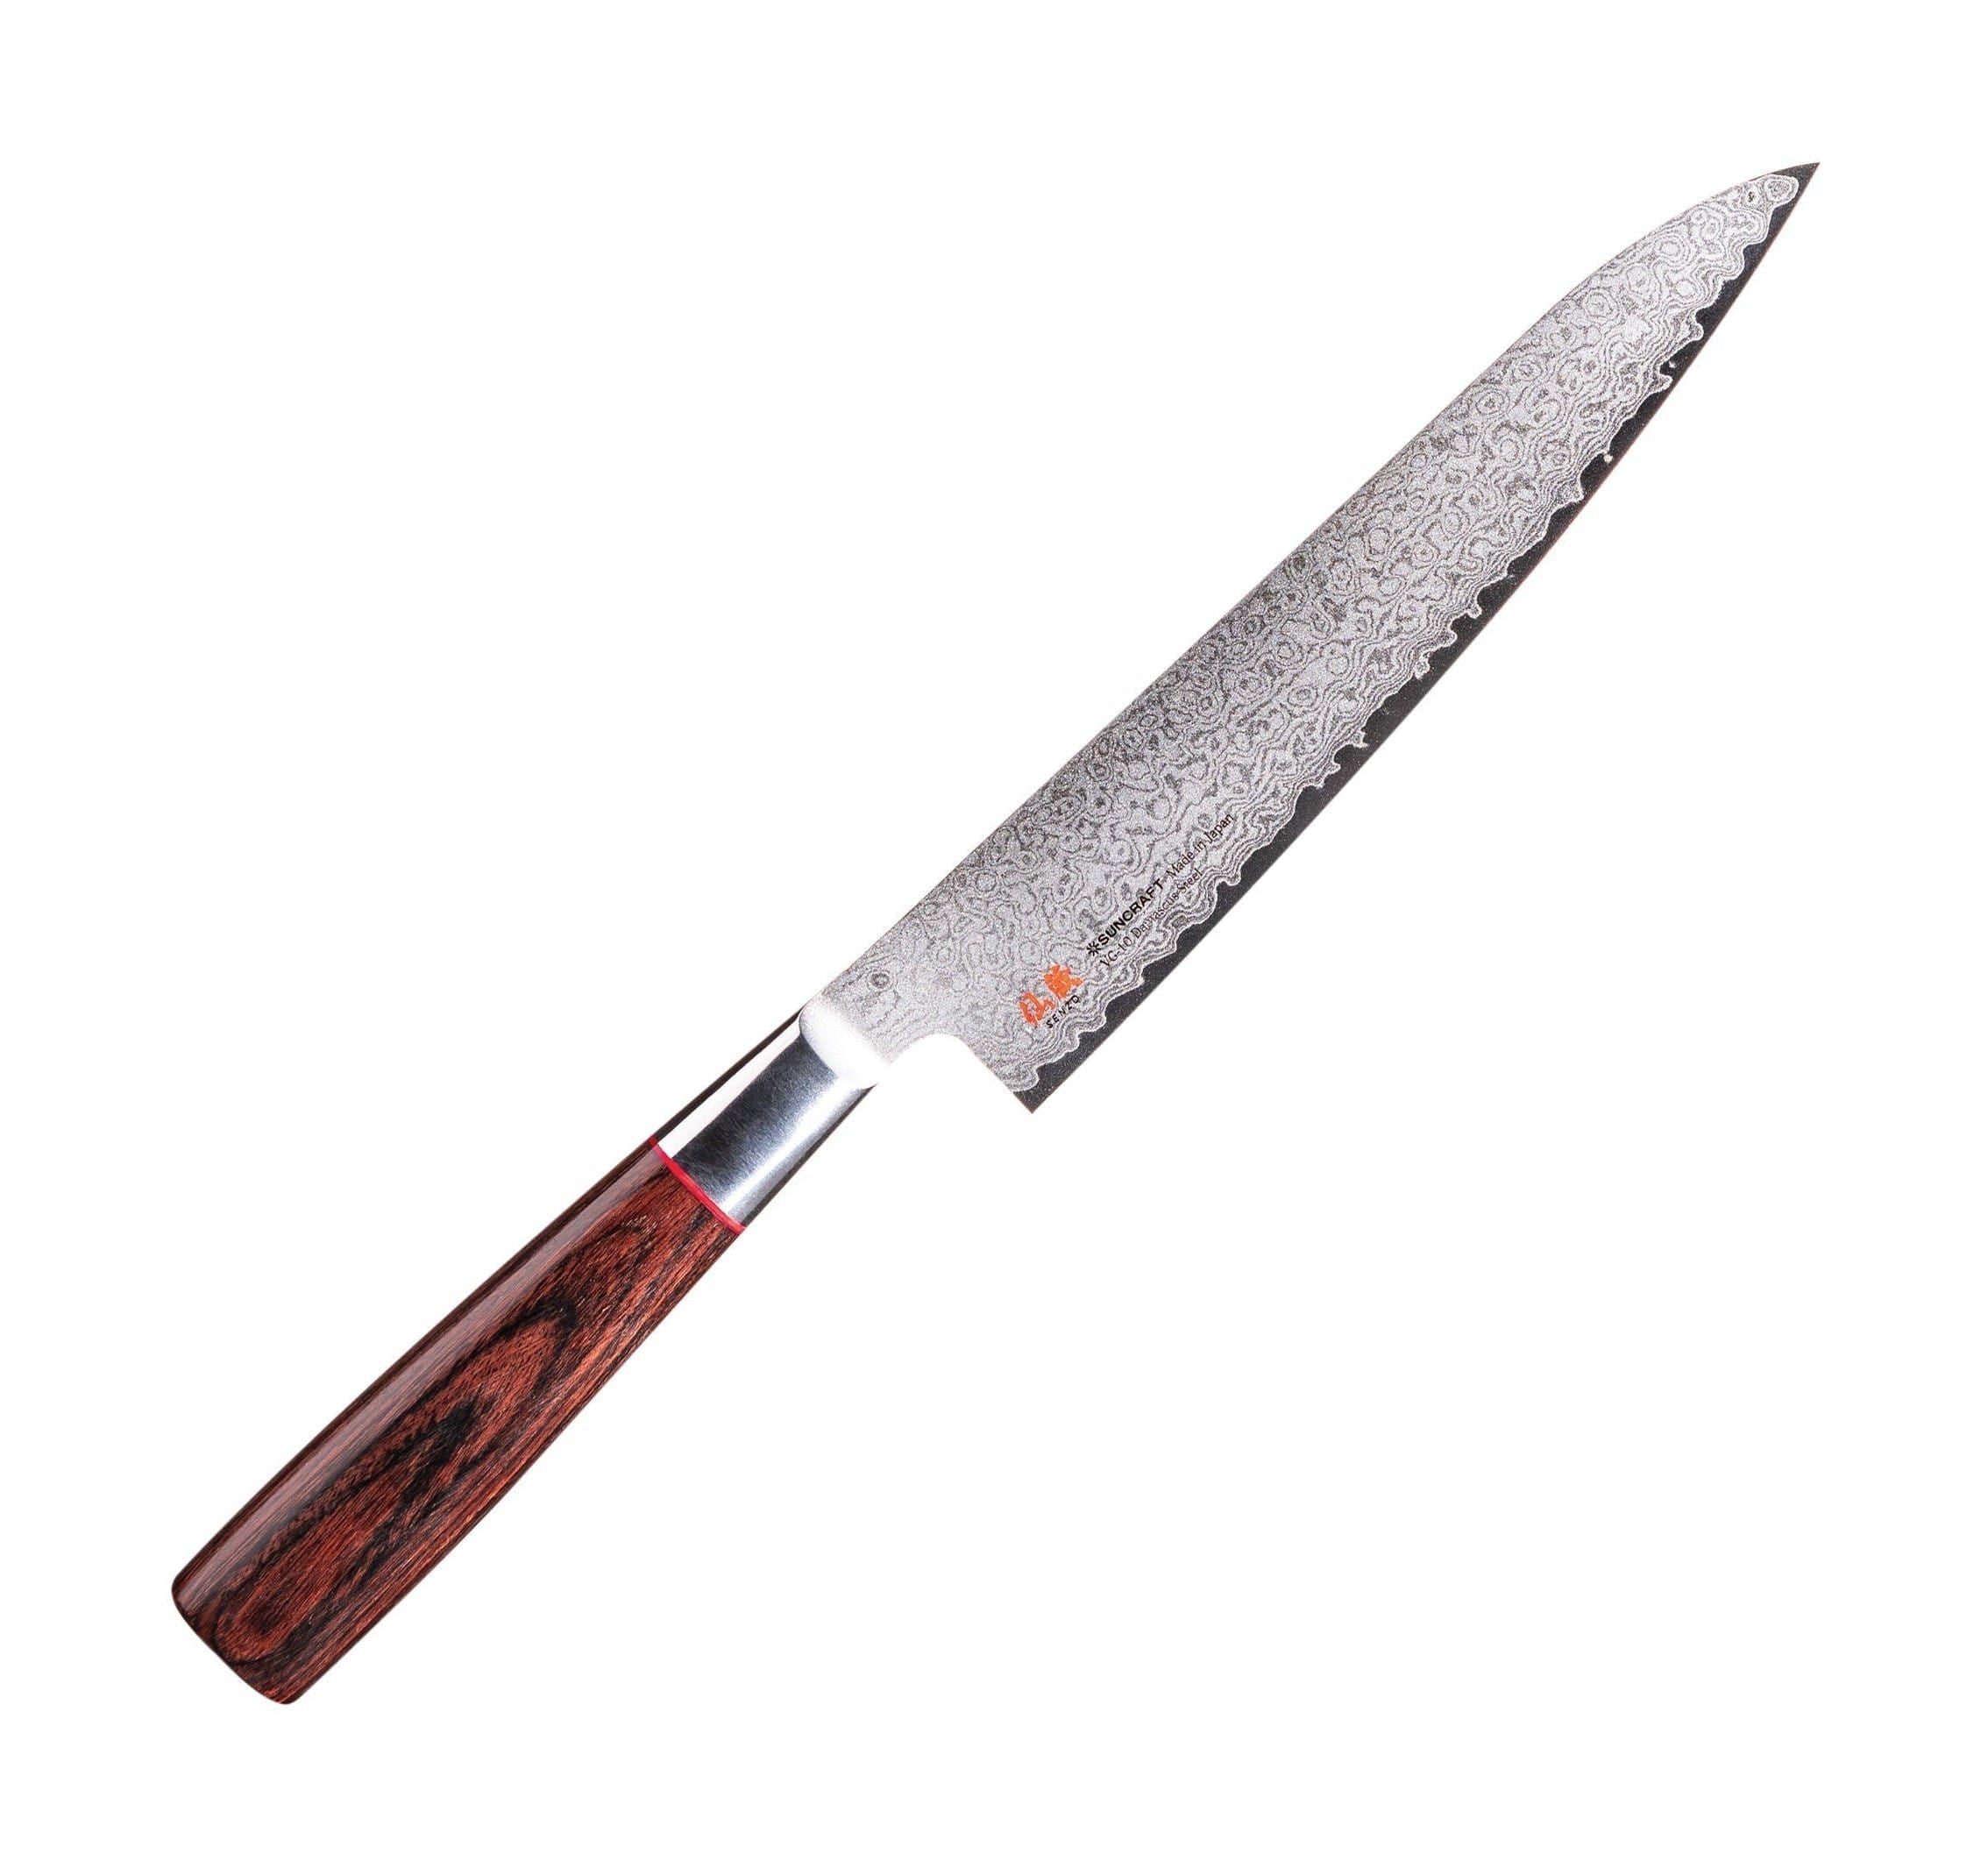 Senzo Classic Id 02 Universal Knife, 12 Cm